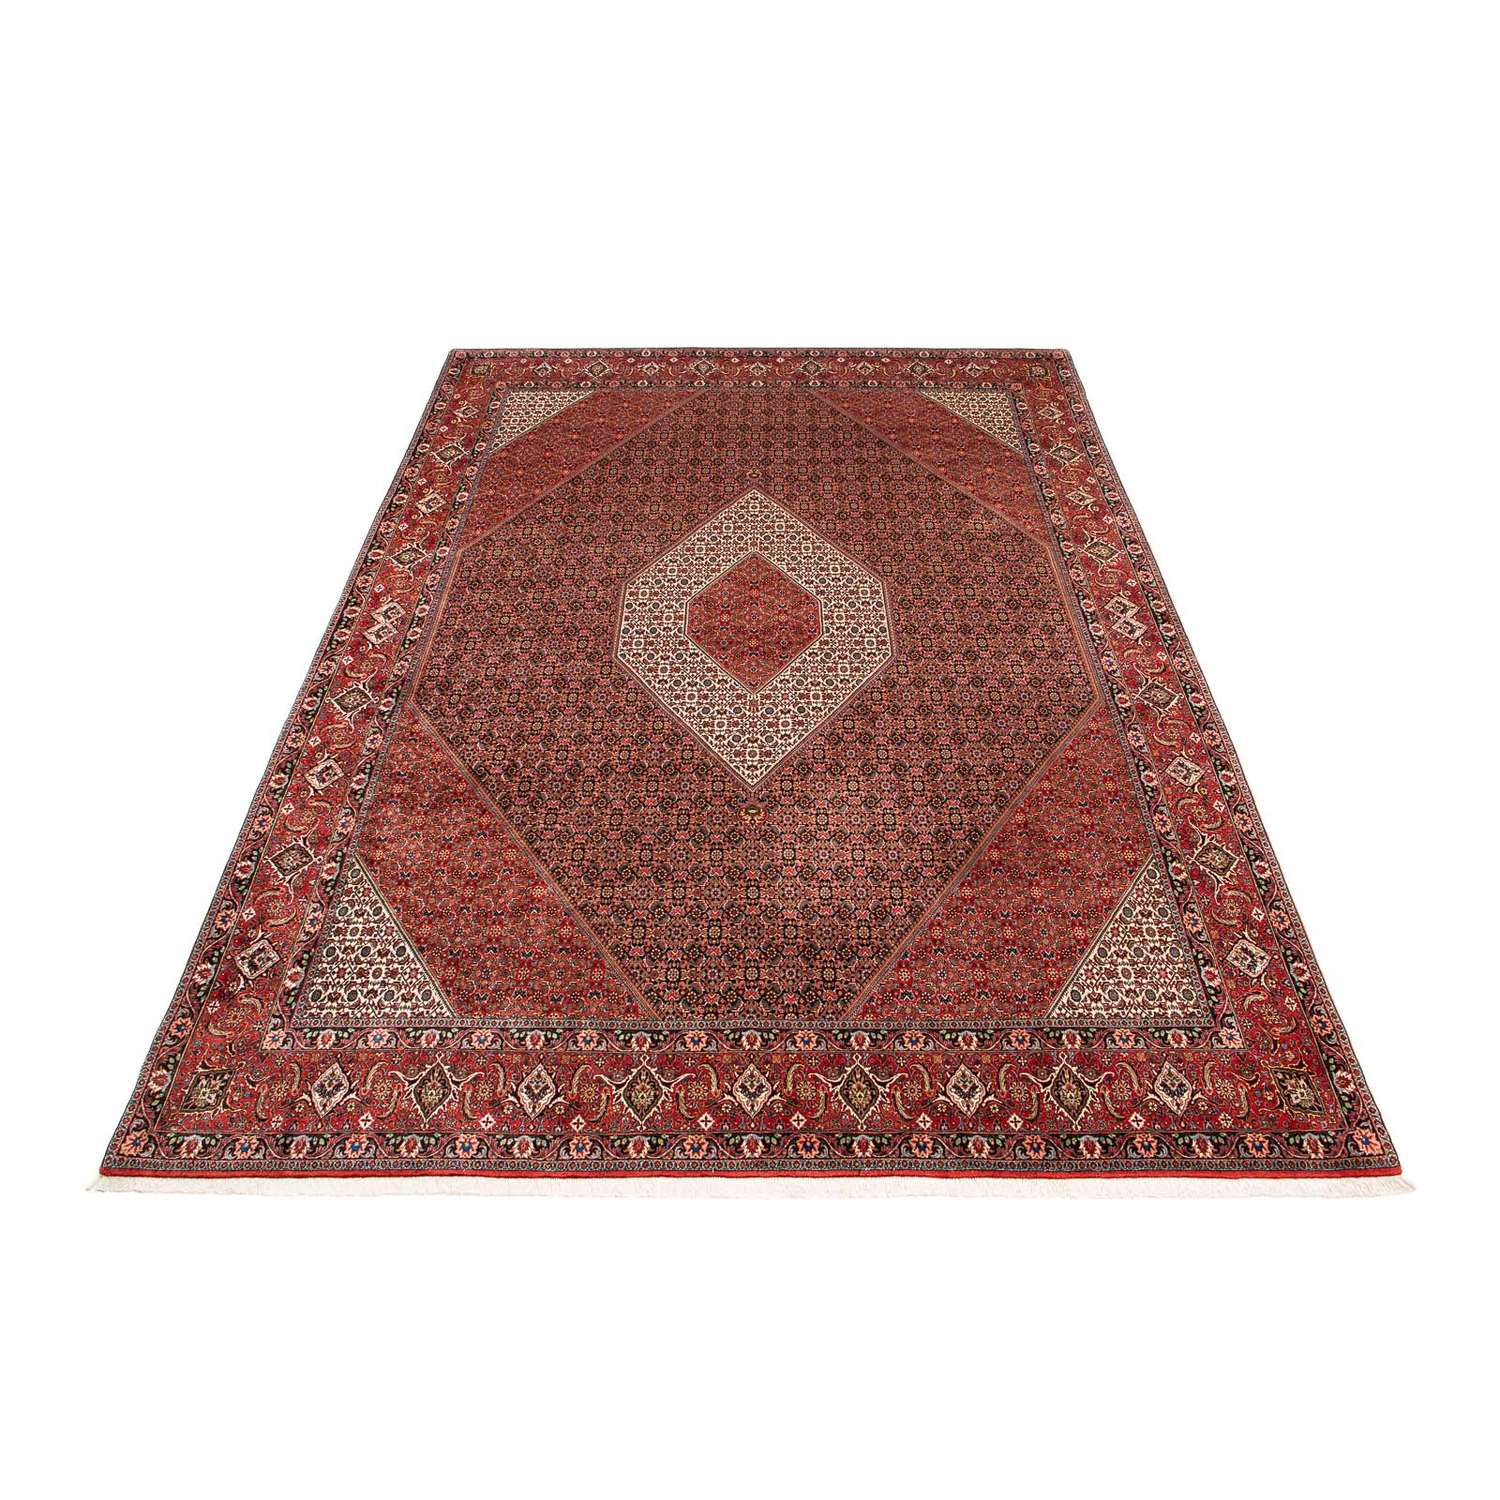 Tapis persan - Bidjar - 394 x 302 cm - rouge clair